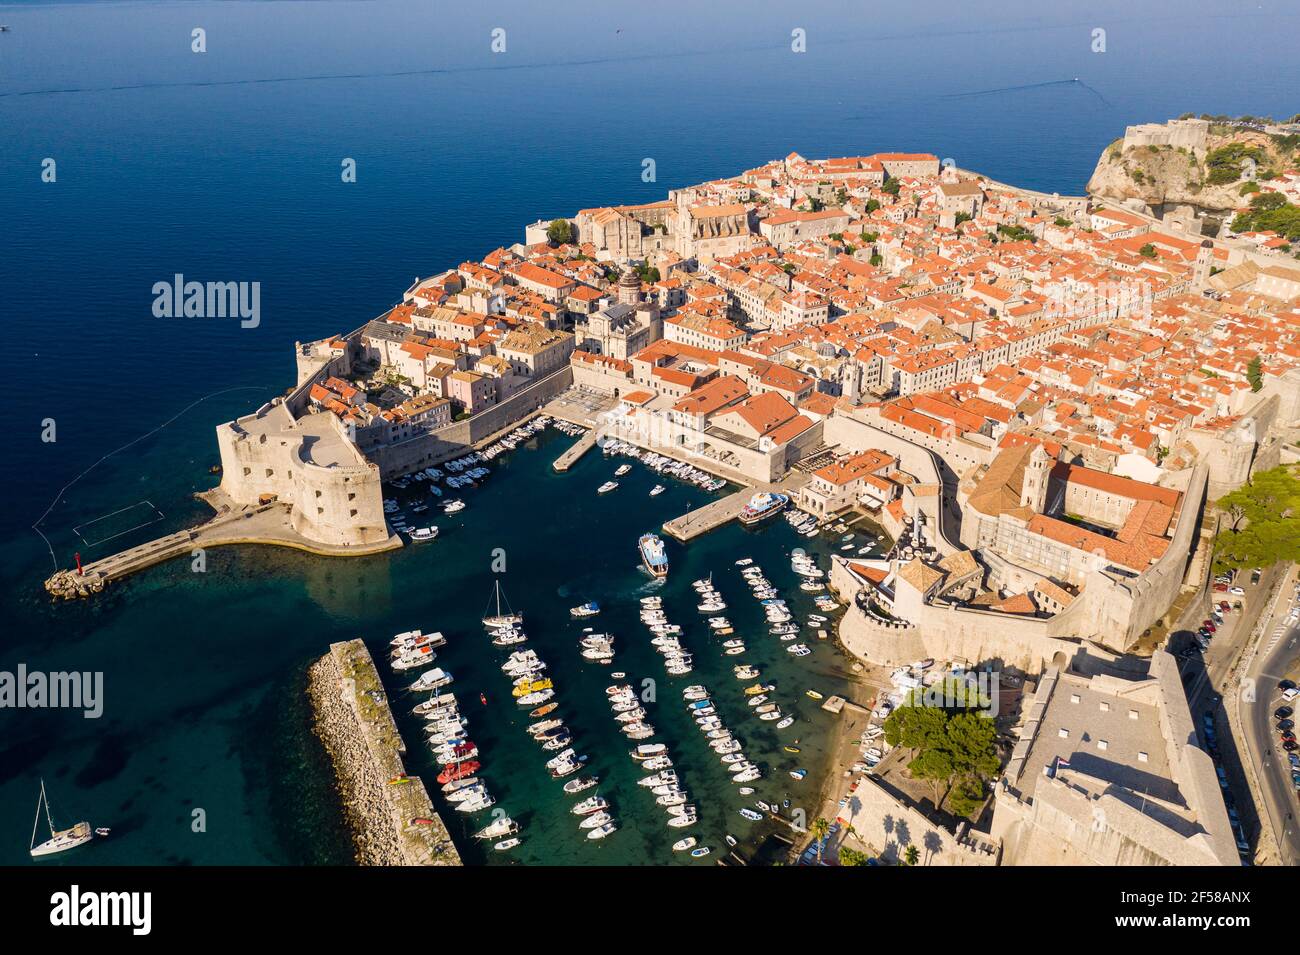 Vue imprenable sur la célèbre vieille ville médiévale de Dubrovnik Avec sa marina et ses murs fortifiés au bord de la mer Adriatique En Croatie Banque D'Images